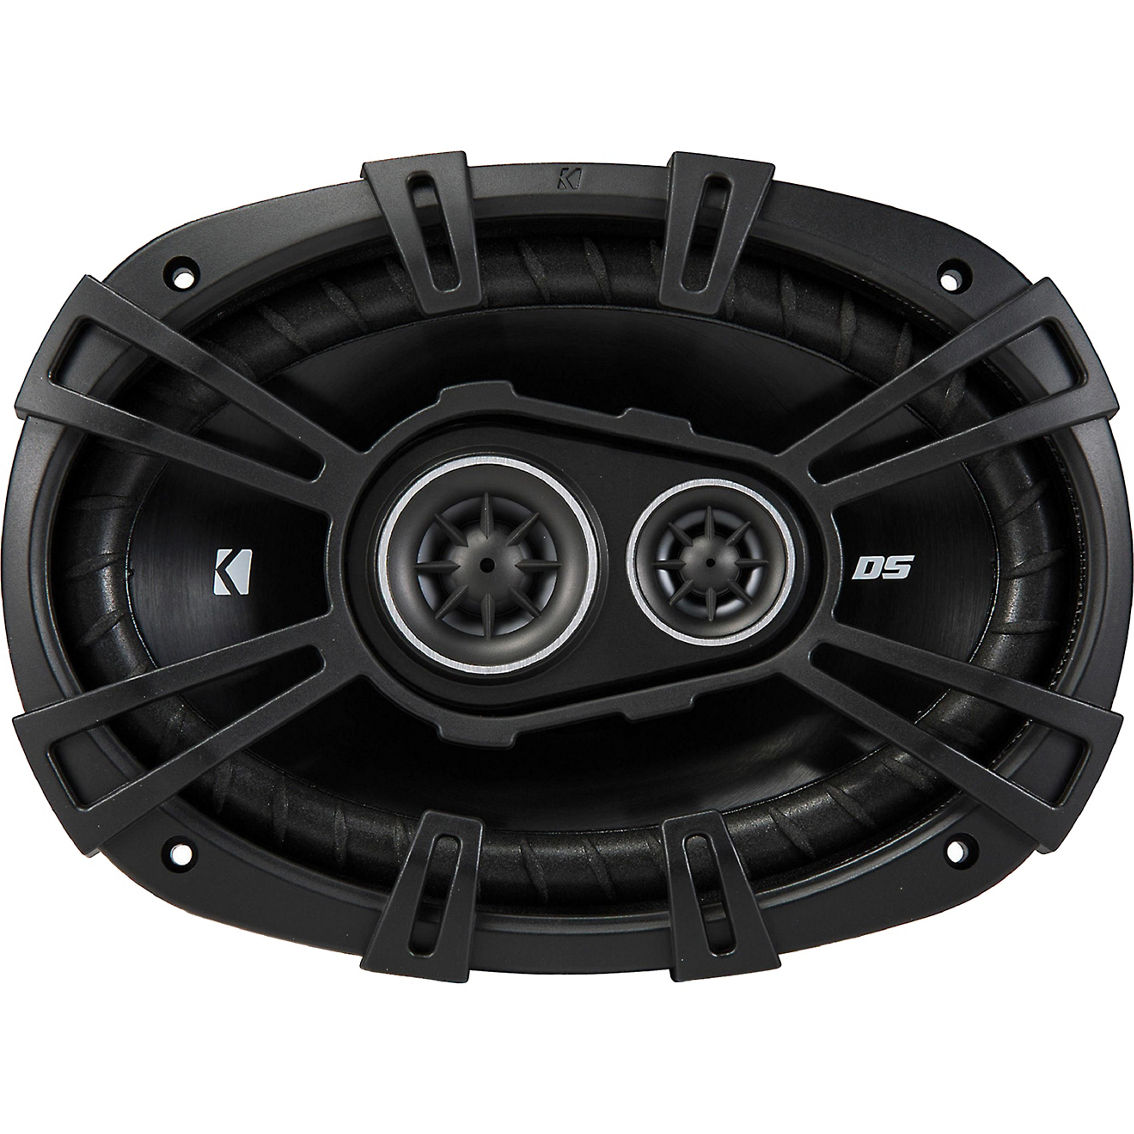 Kicker DS Series 6 in. x 9 in. 3 Way Car Speakers - Image 2 of 6